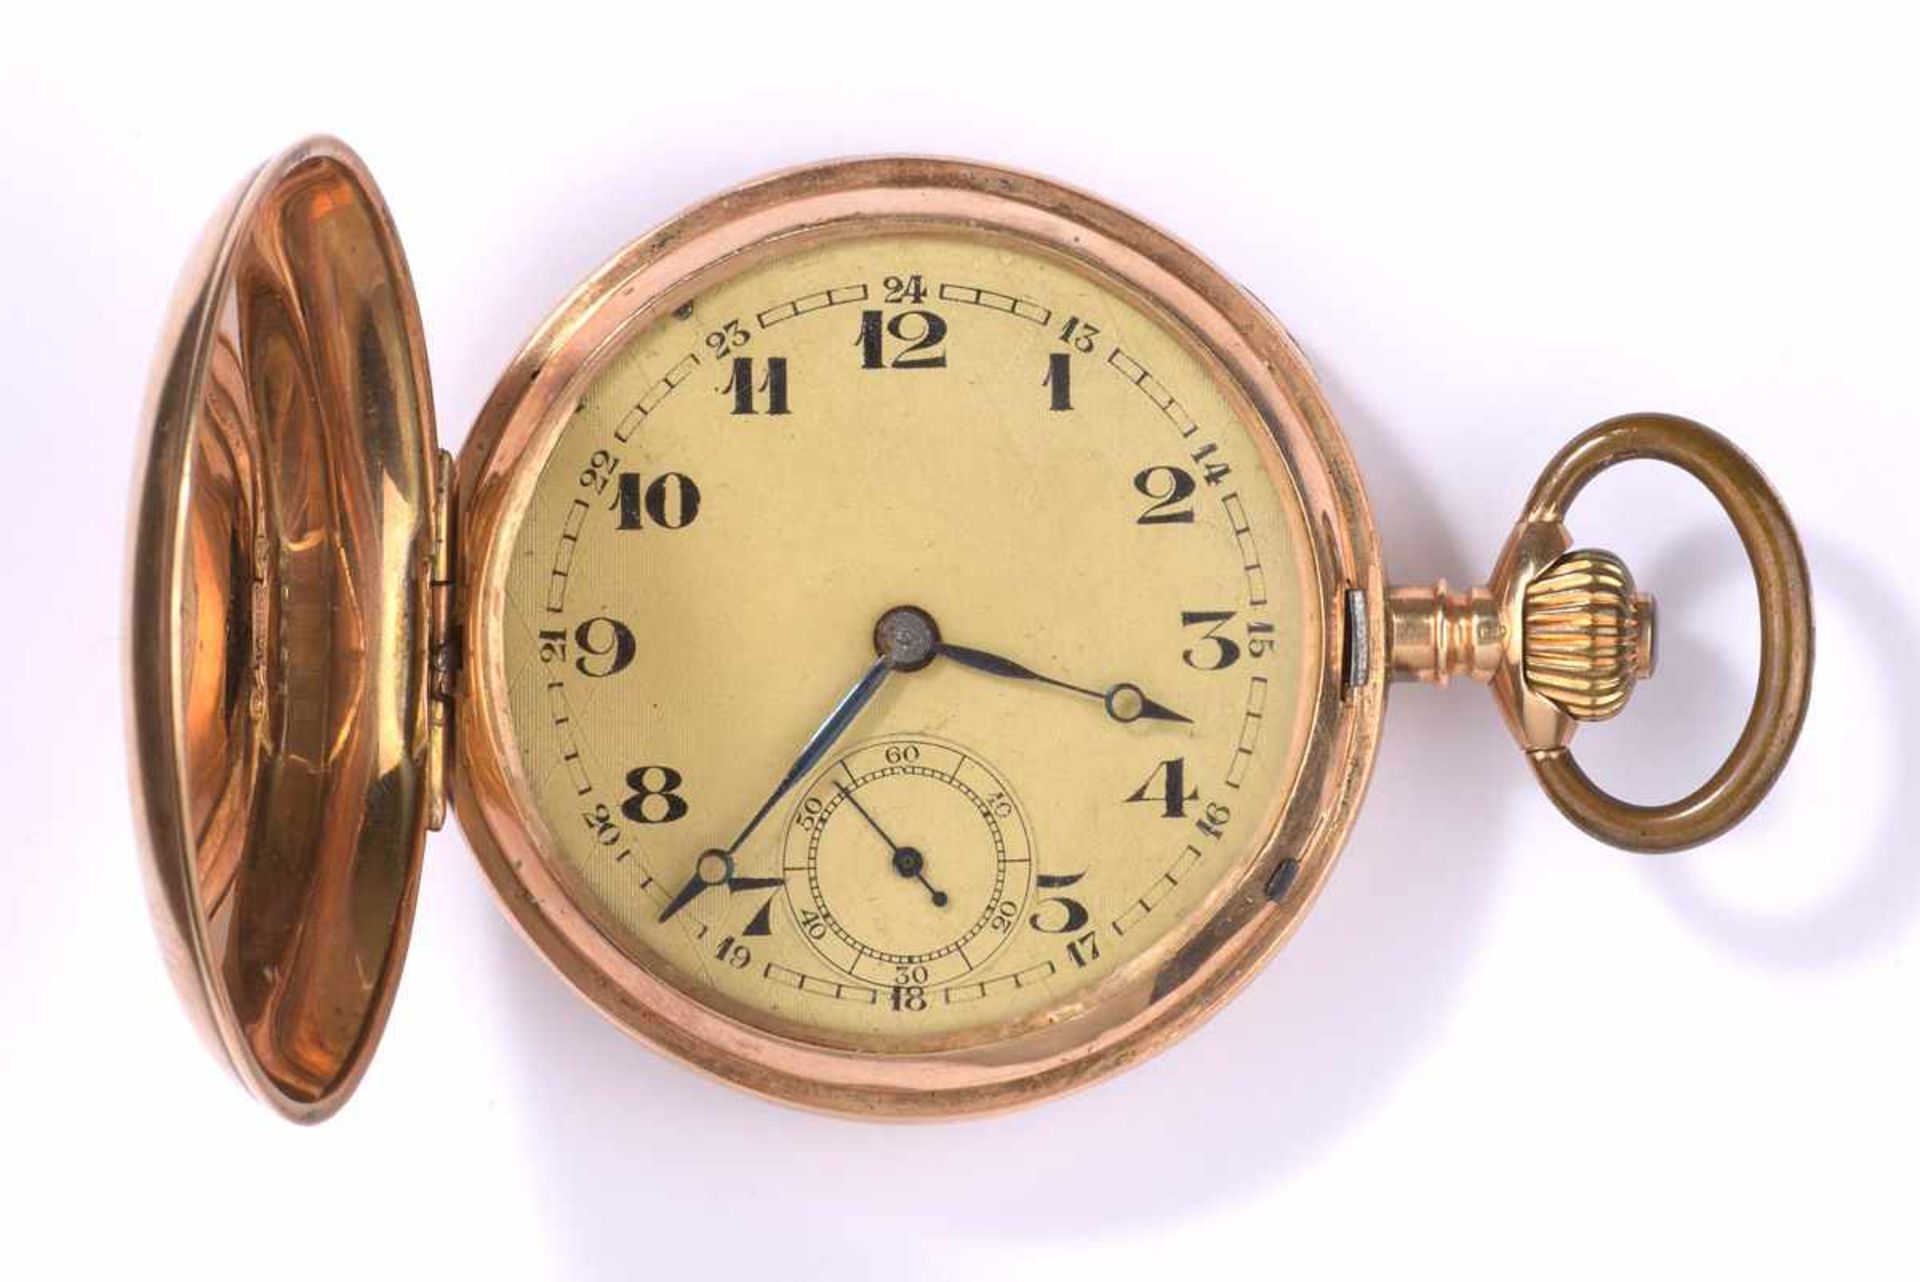 Savonette mit Uhrkette Um 1900585- Goldgehäuse und Kette. Ø 5,2 cm, zus. 120 g.